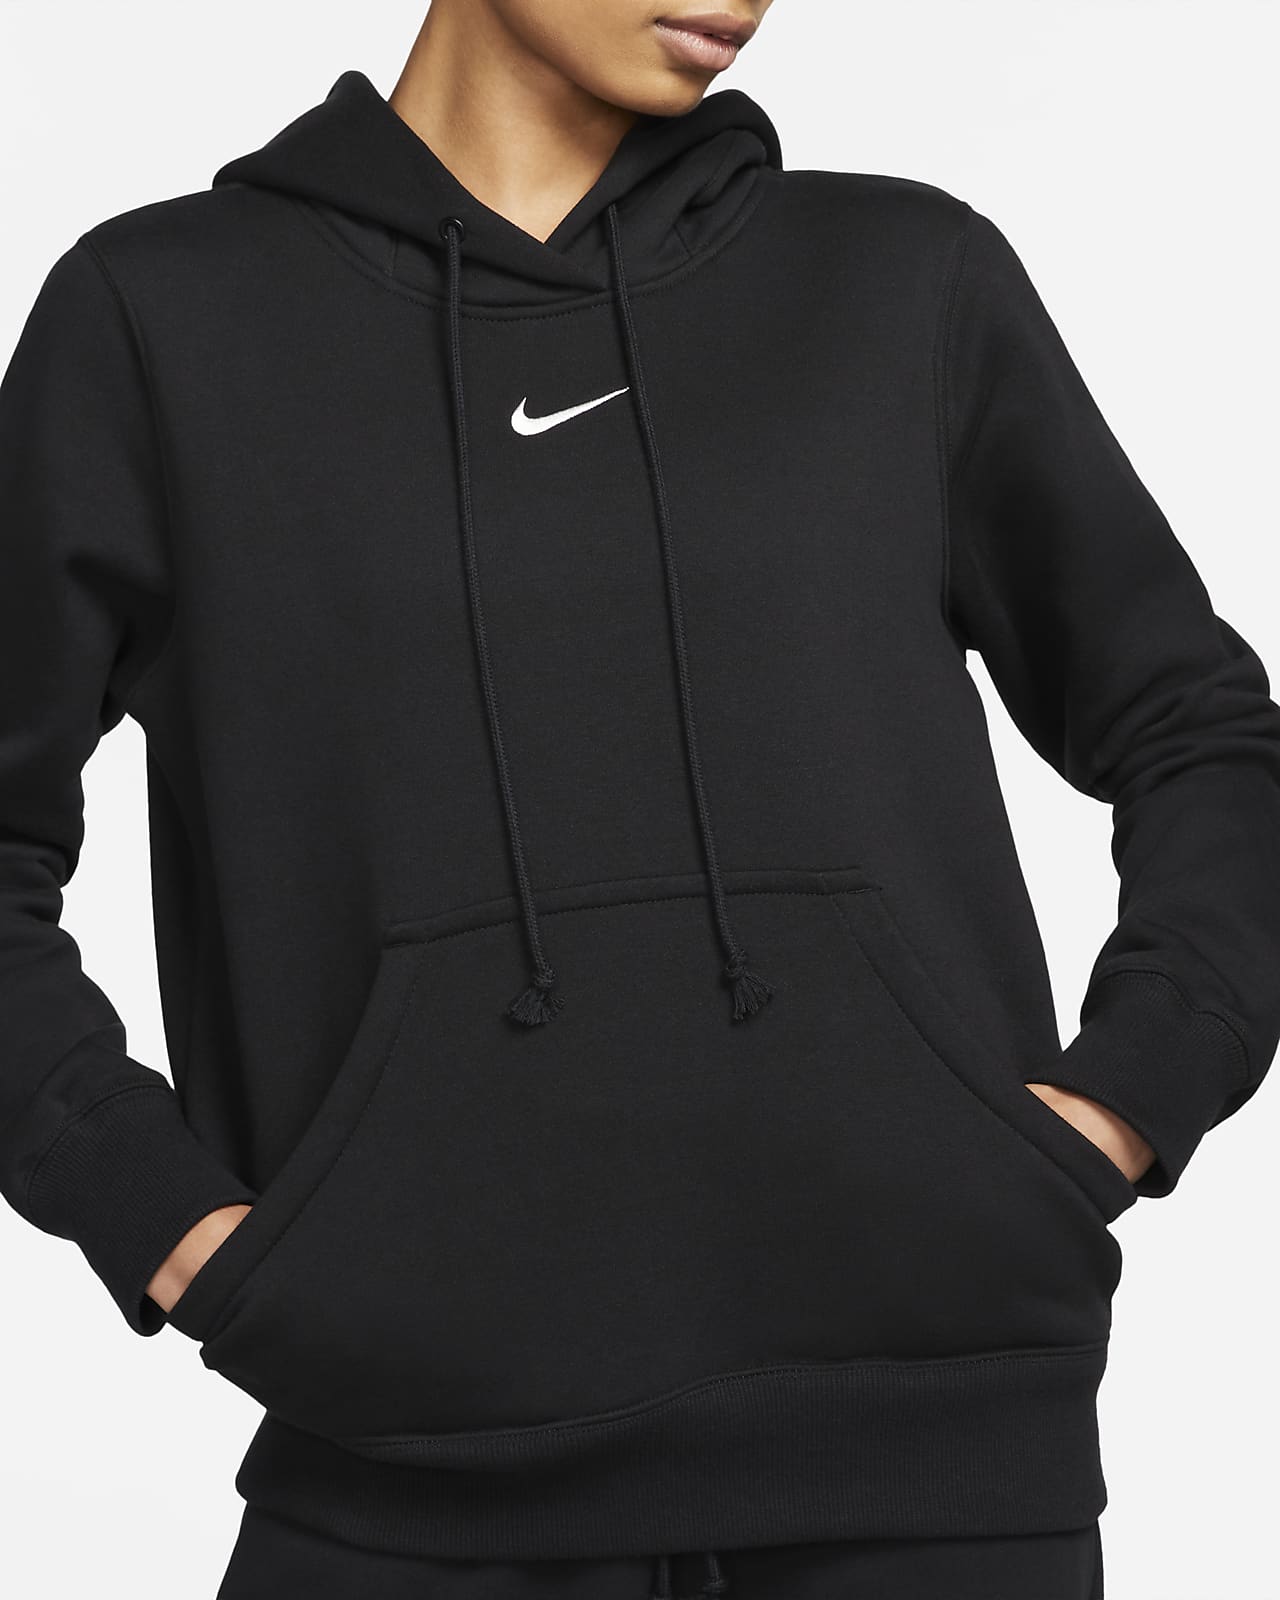 Nike Sportswear Phoenix Fleece Women's Pullover Hoodie. Nike HR